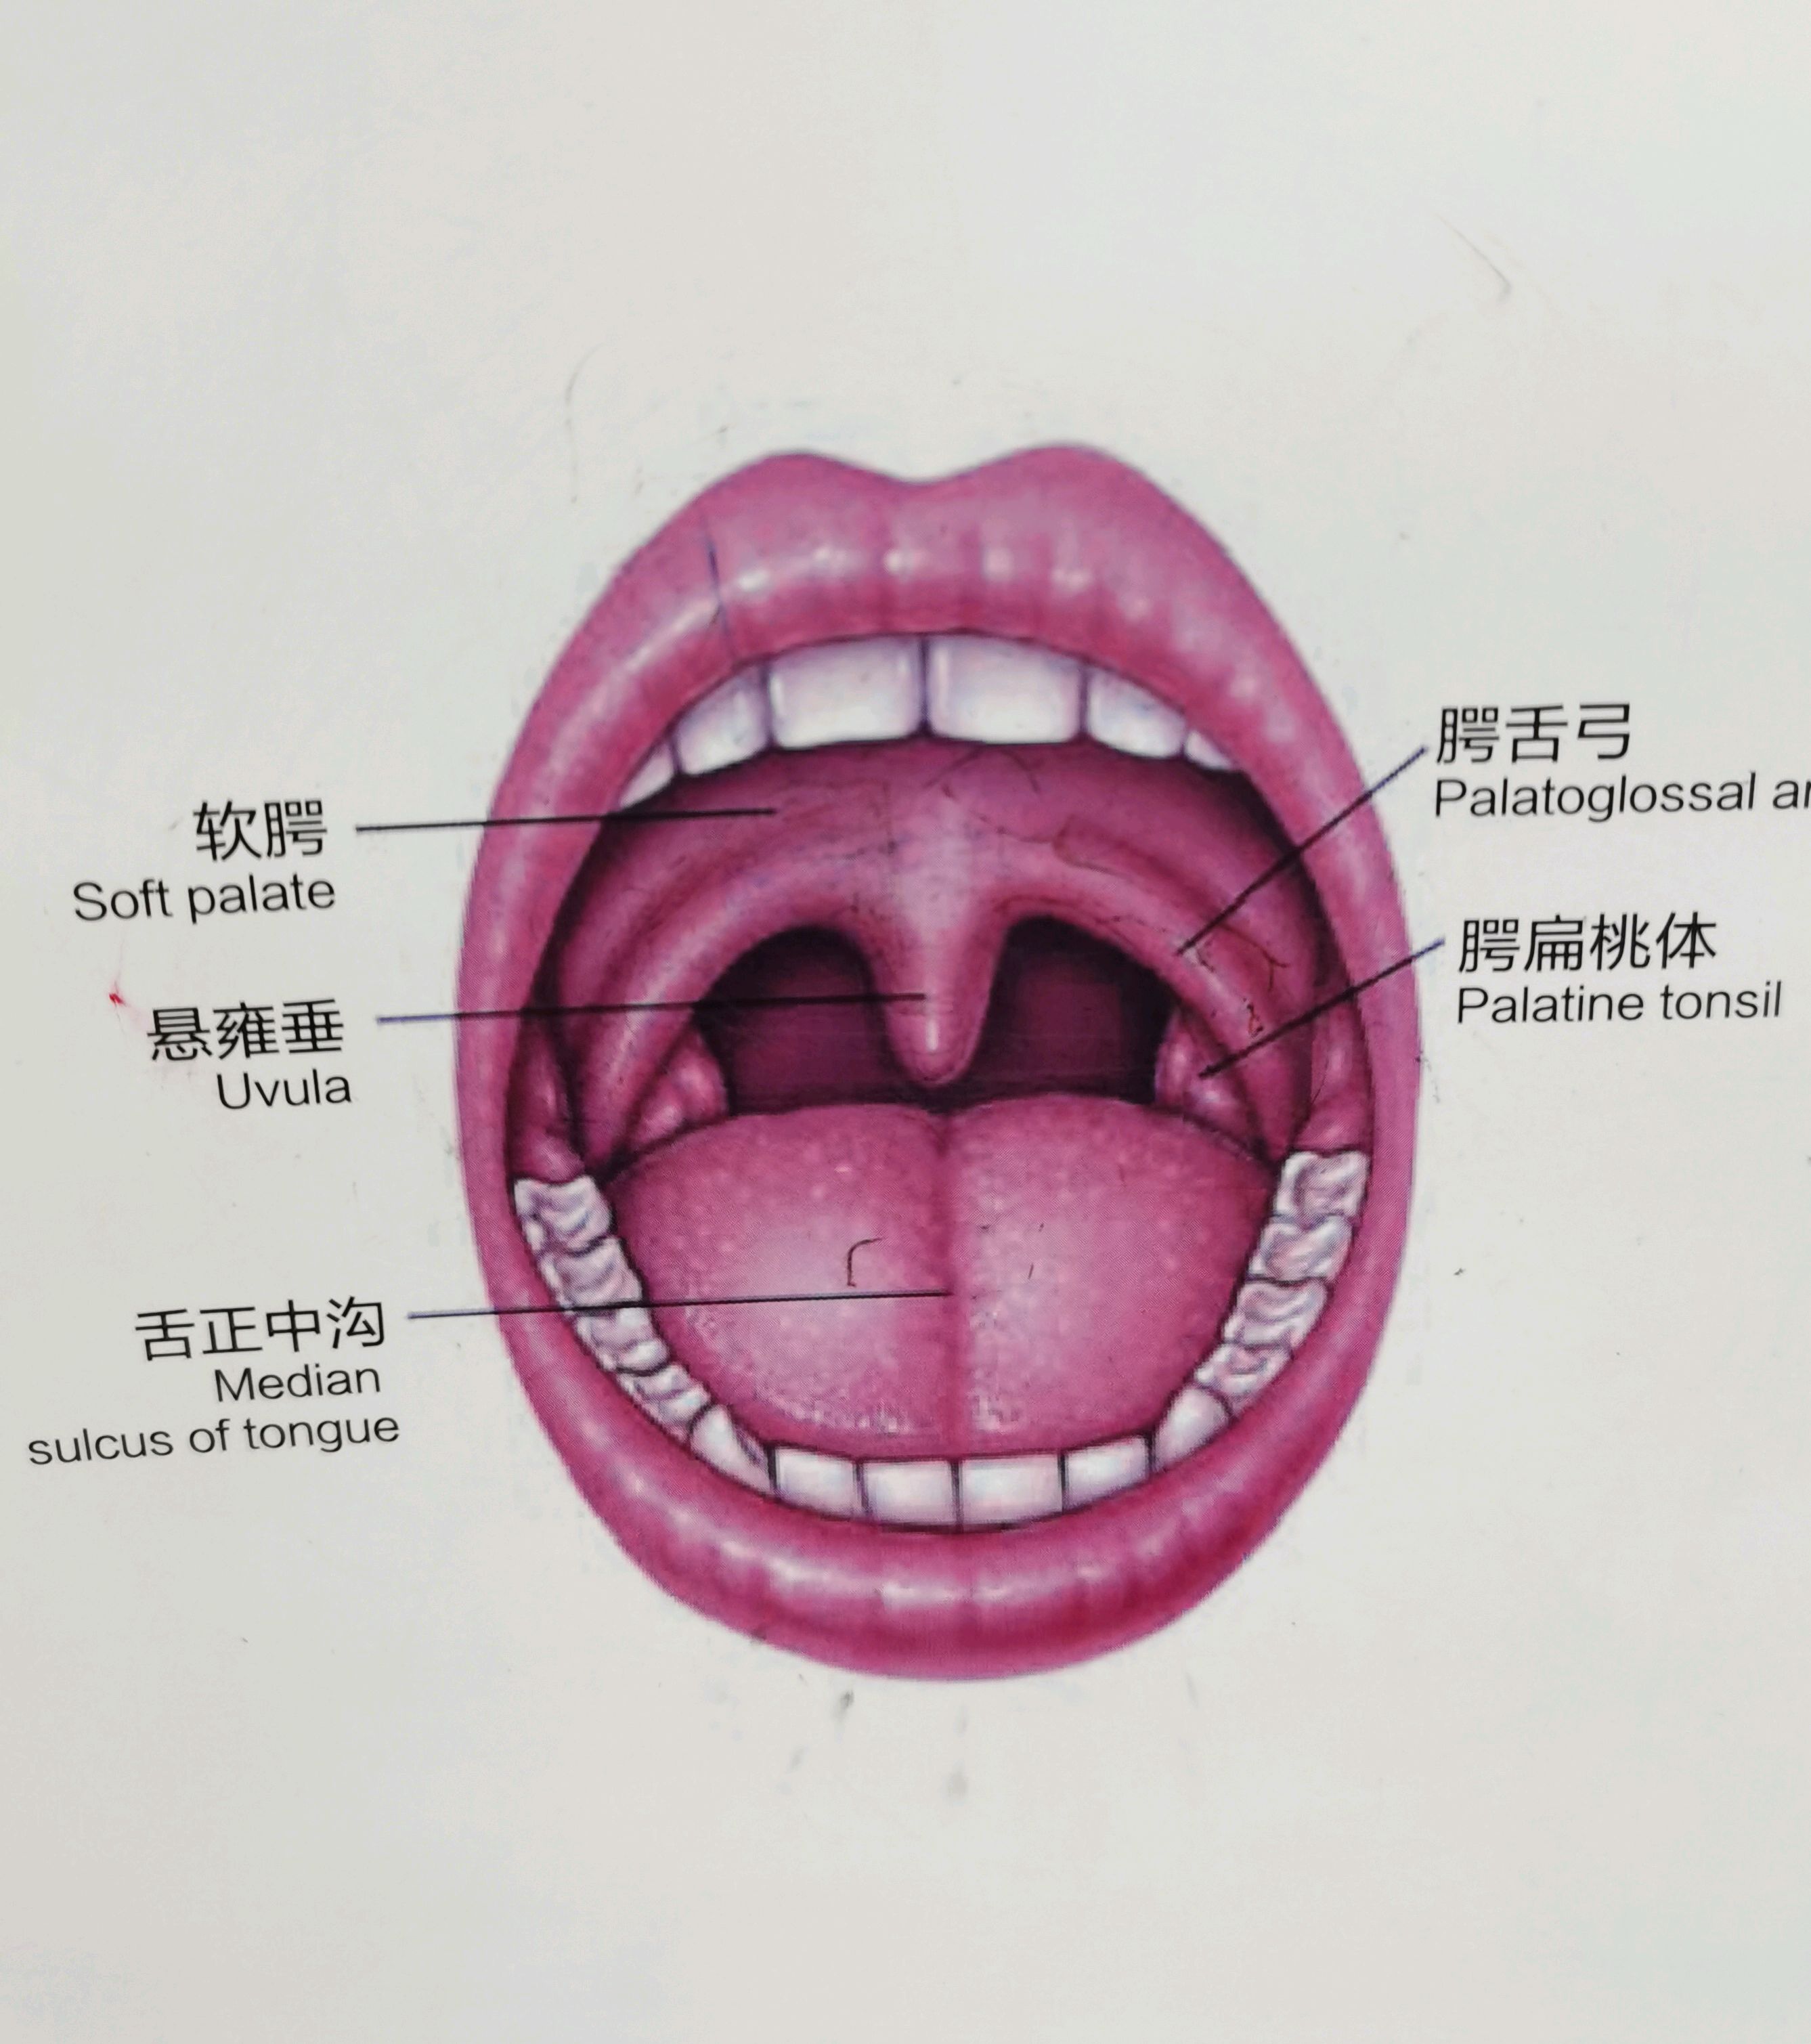 正常人咽喉的结构图片图片